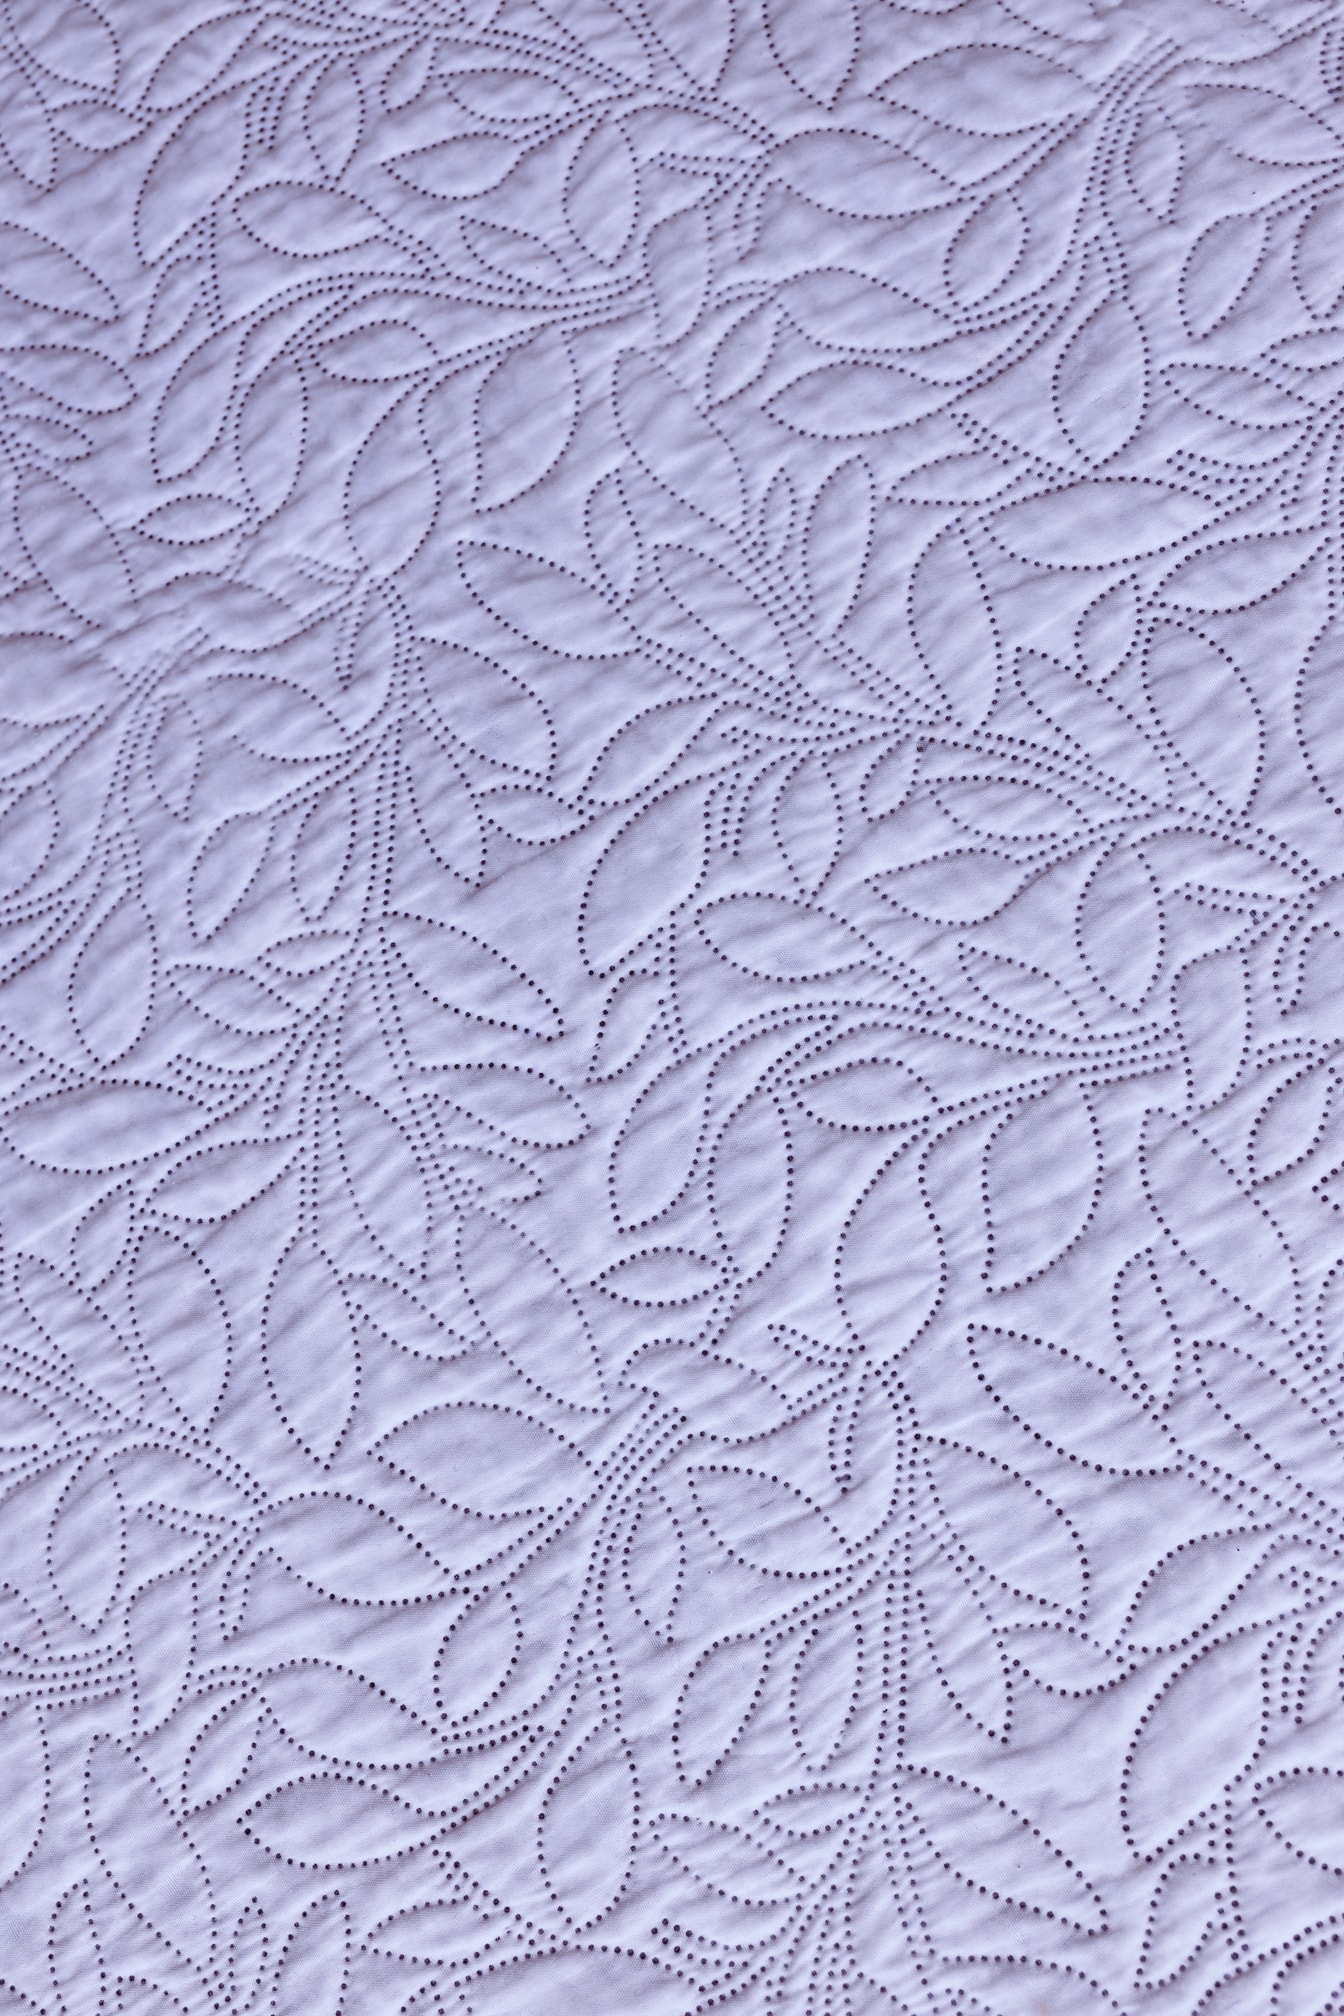 Белый хлопковый дамасский текстиль с орнаментальным швейным декором